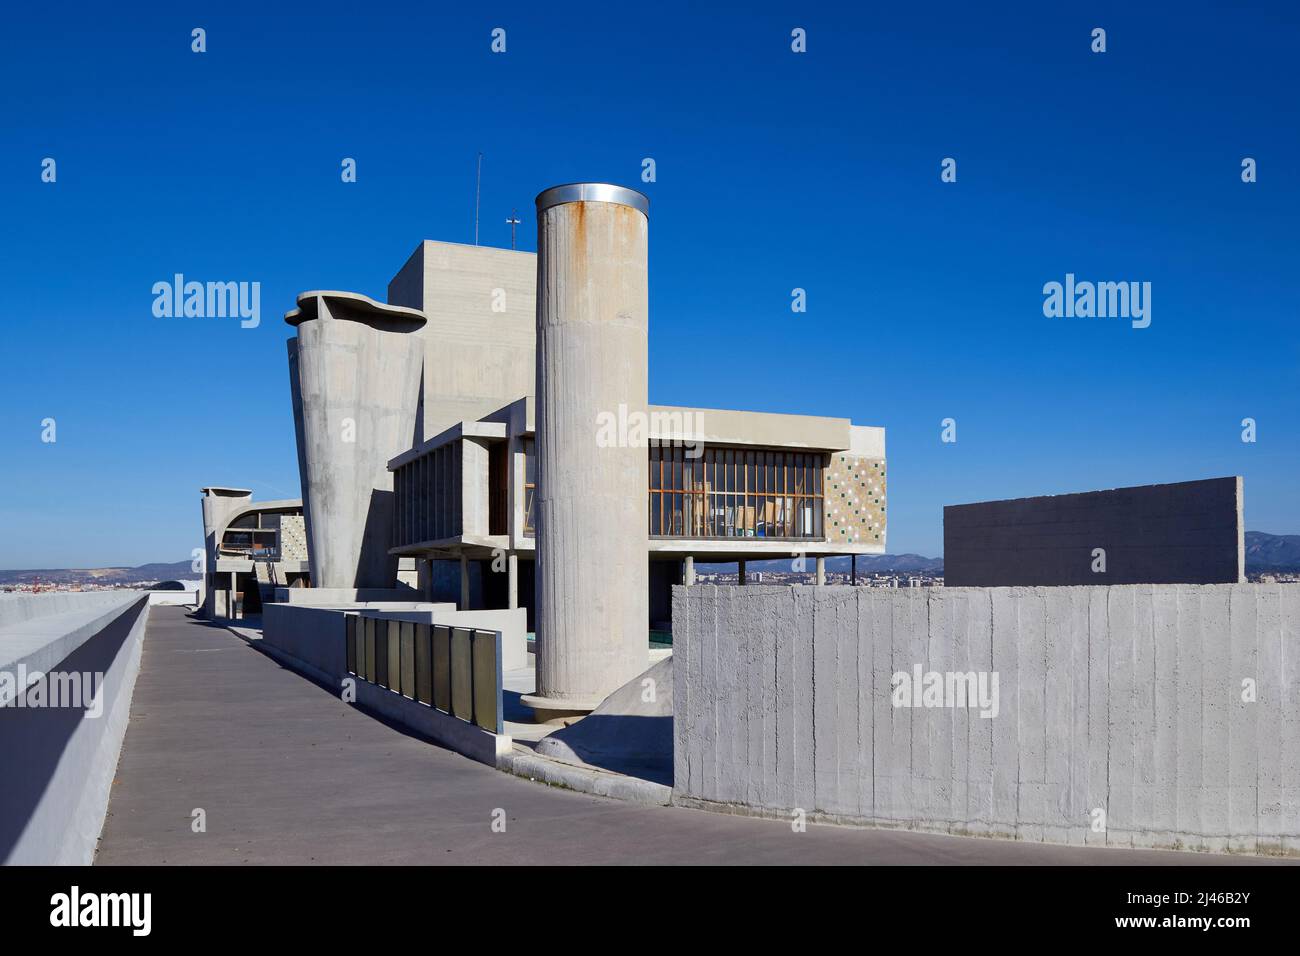 Cité radieuse, Unite d' abitazione, terrazza sul tetto (Le Corbusier, 1952), Marsiglia, Francia Foto Stock